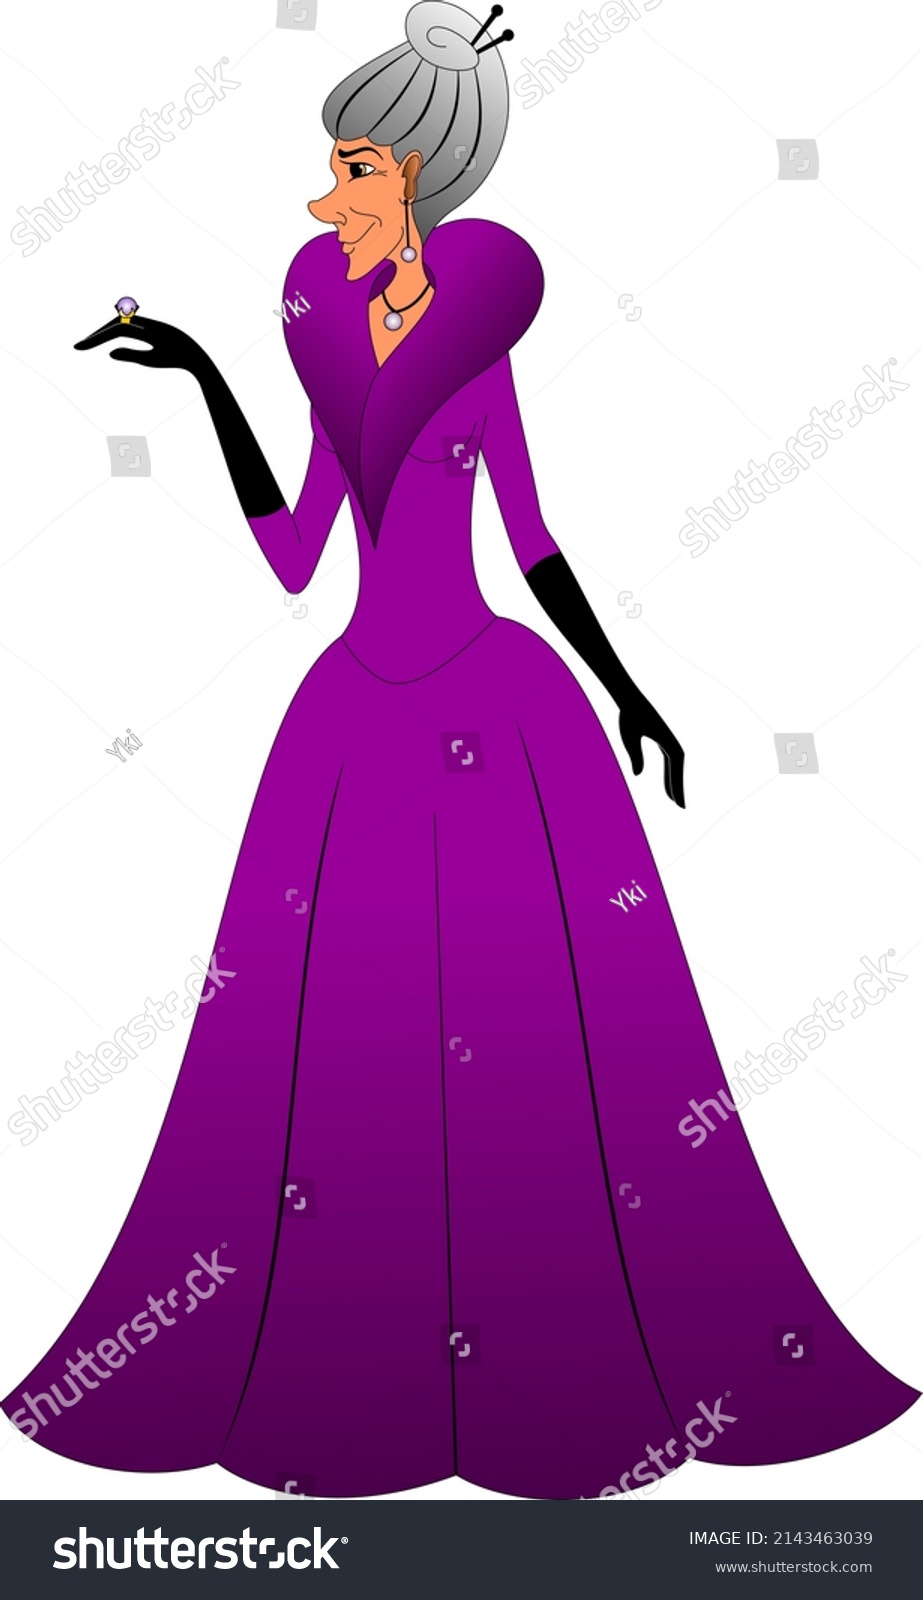 SVG of Cinderella's evil stepmother, in purple dress and black gloves svg